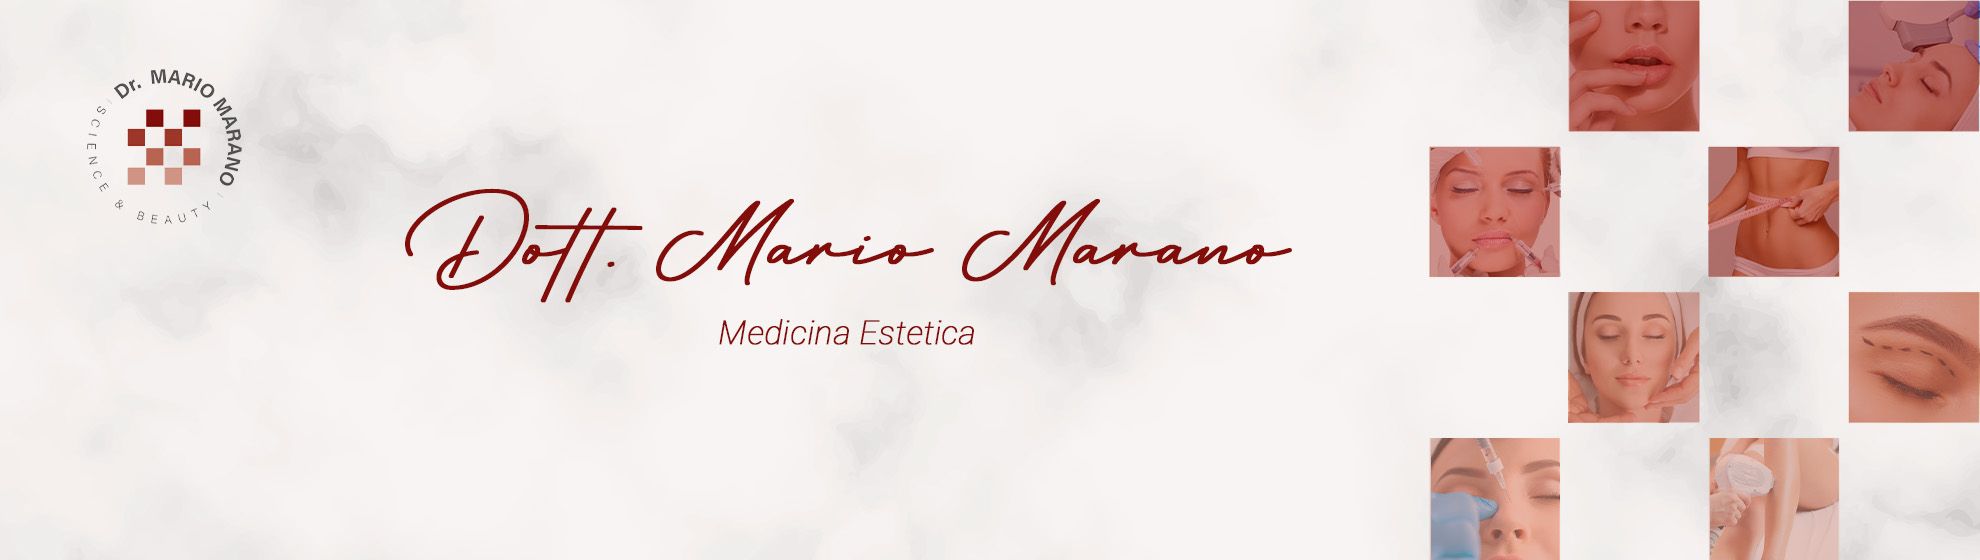 Dott. Mario Marano